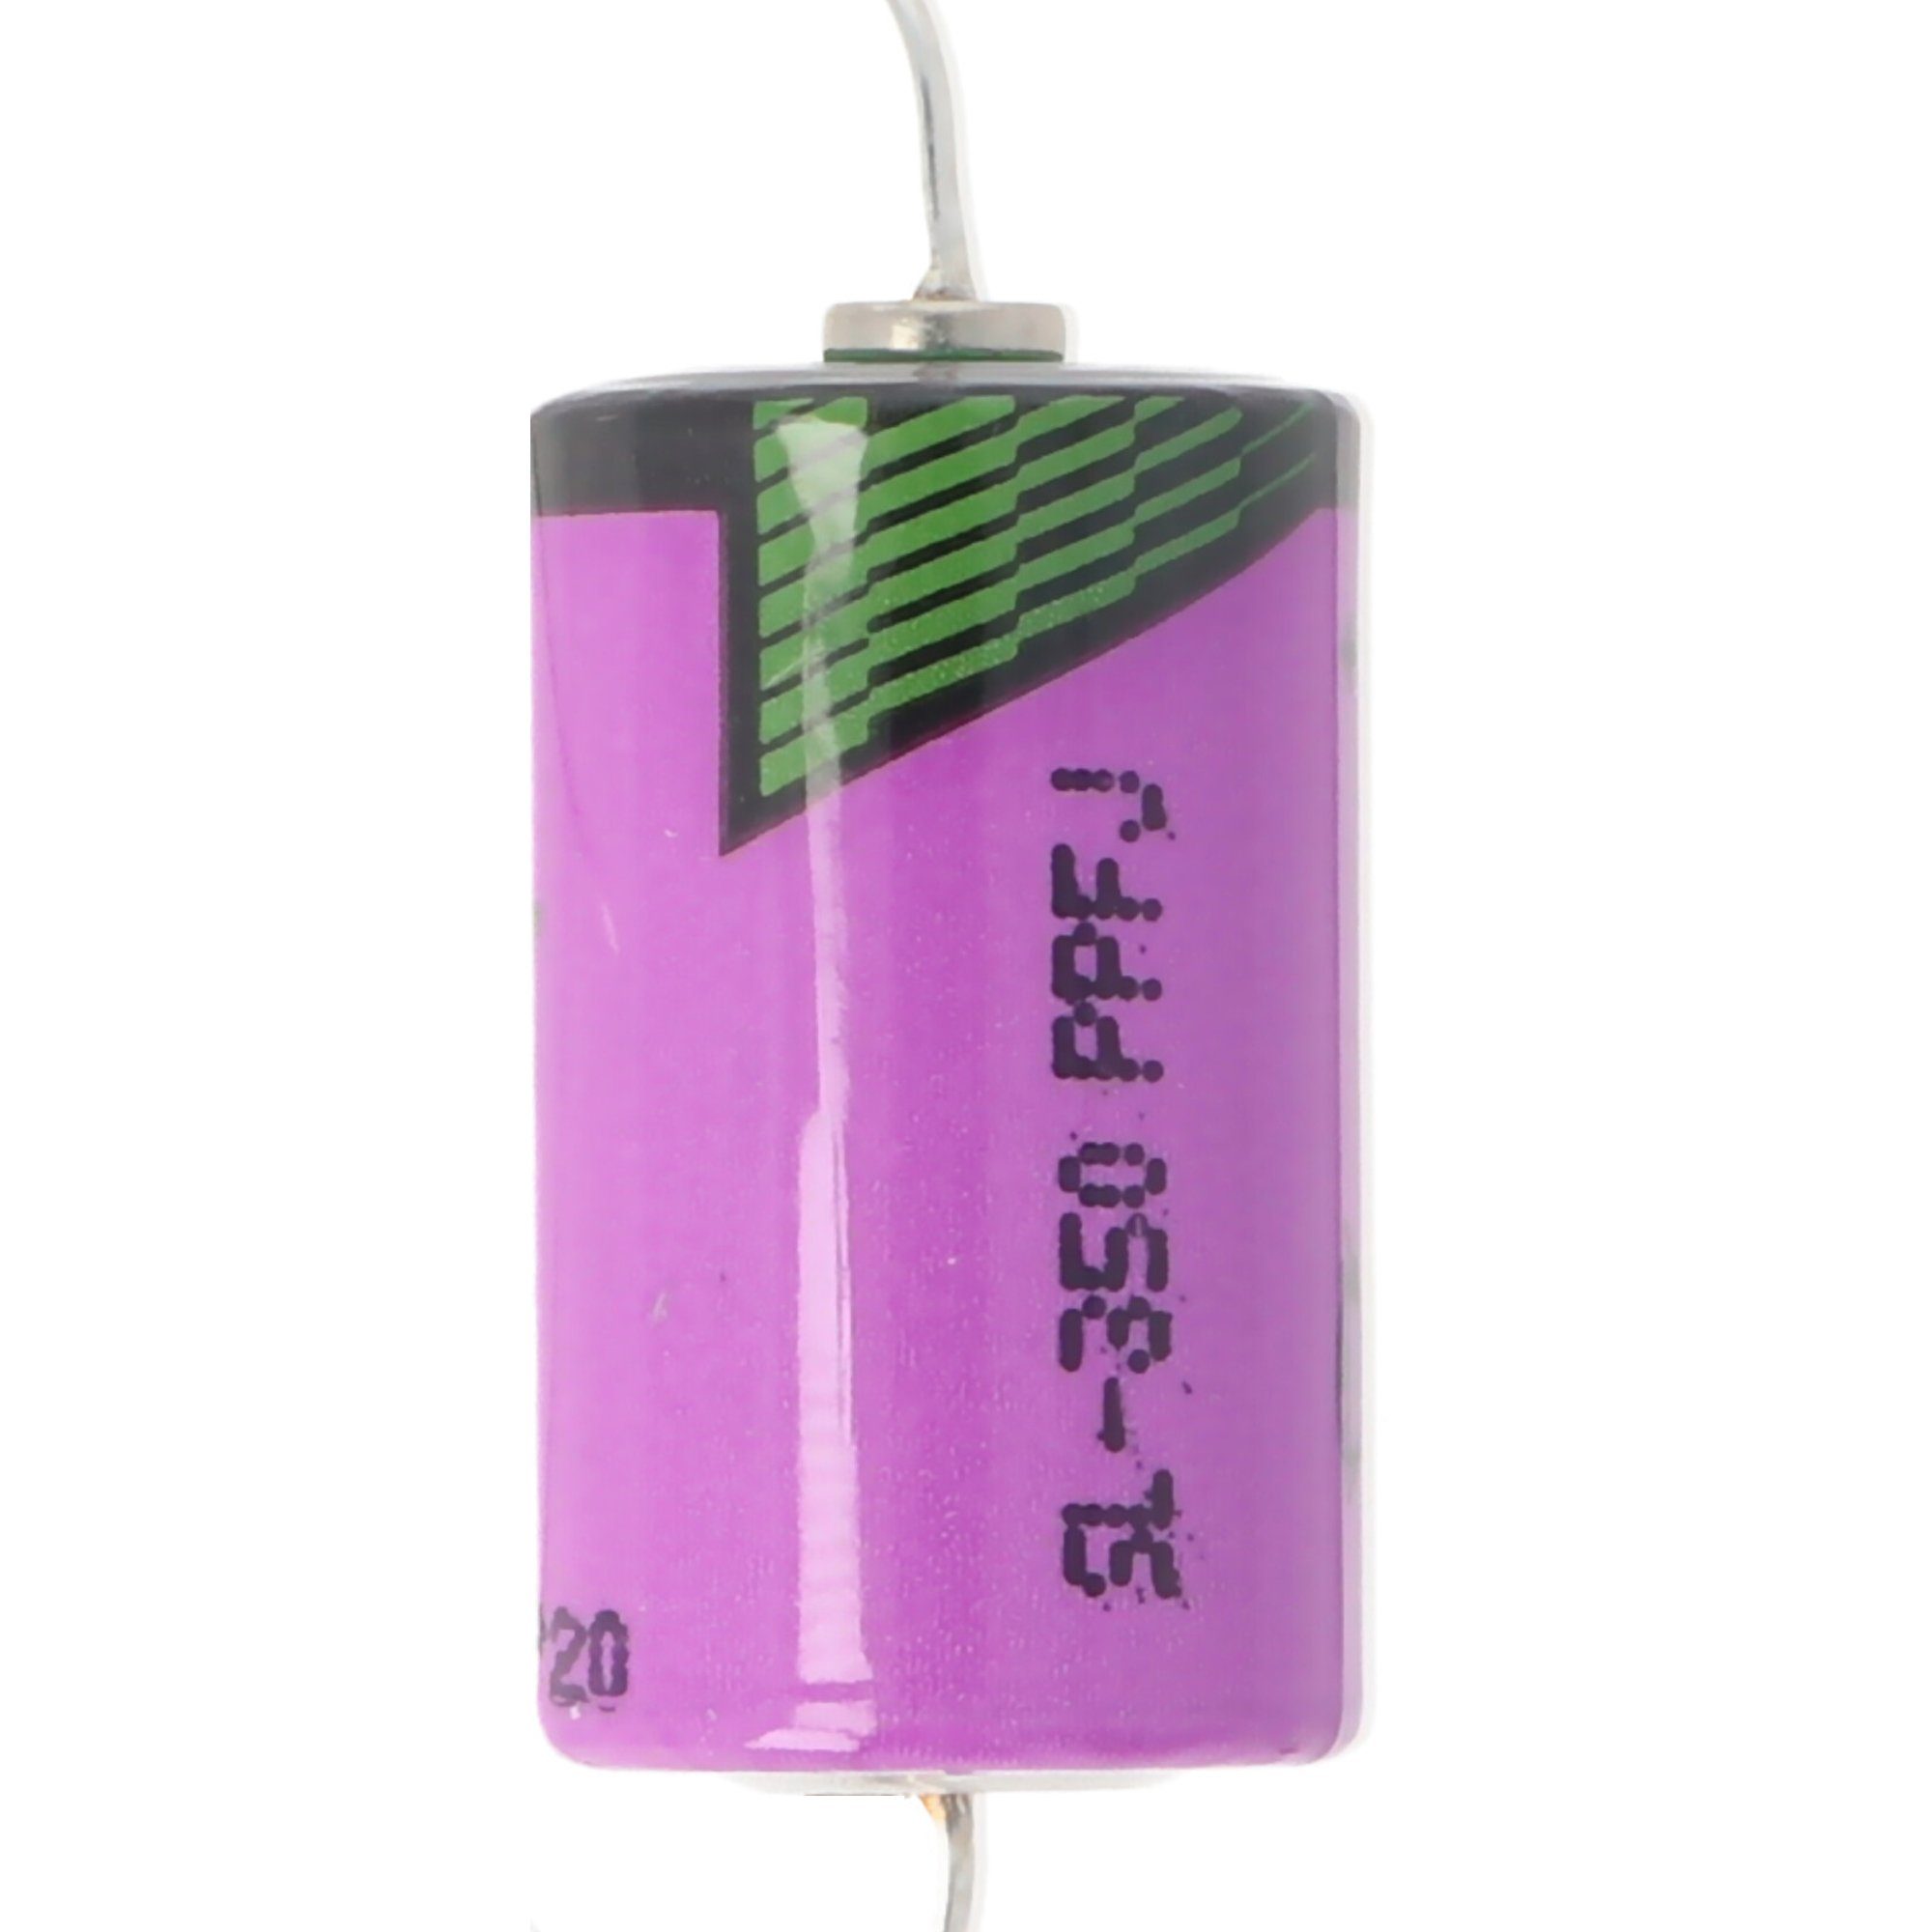 Tadiran Batterie passend für Pufferbatterie 049822 (3,6 V) Eaton Moel Batterie, Typ ZB4-600-BT1